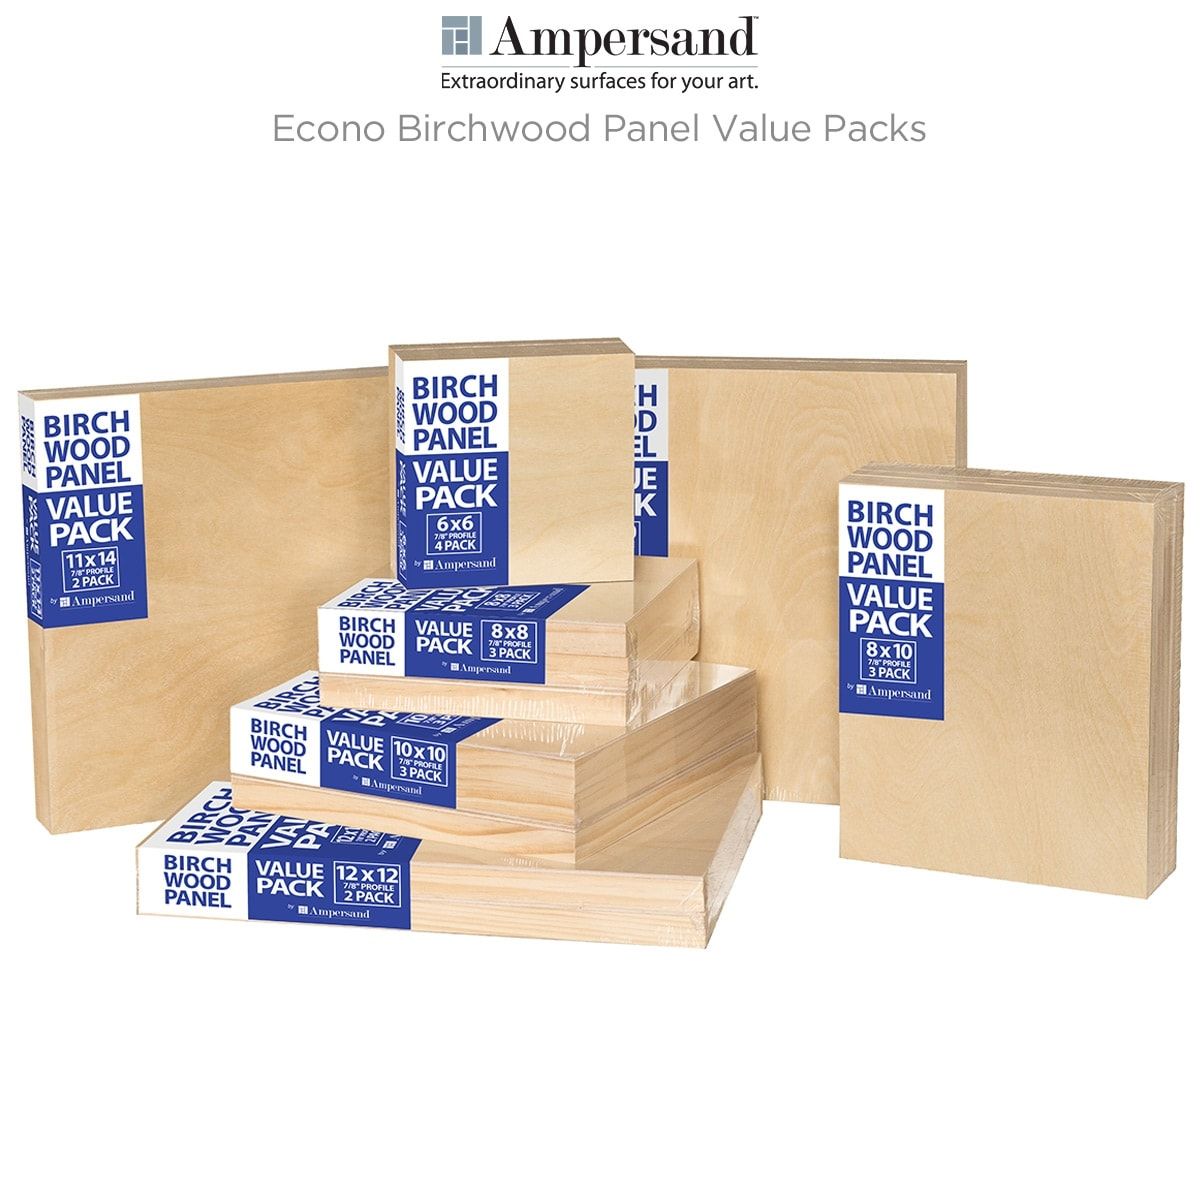 Ampersand Econo Birchwood Panel Value Packs